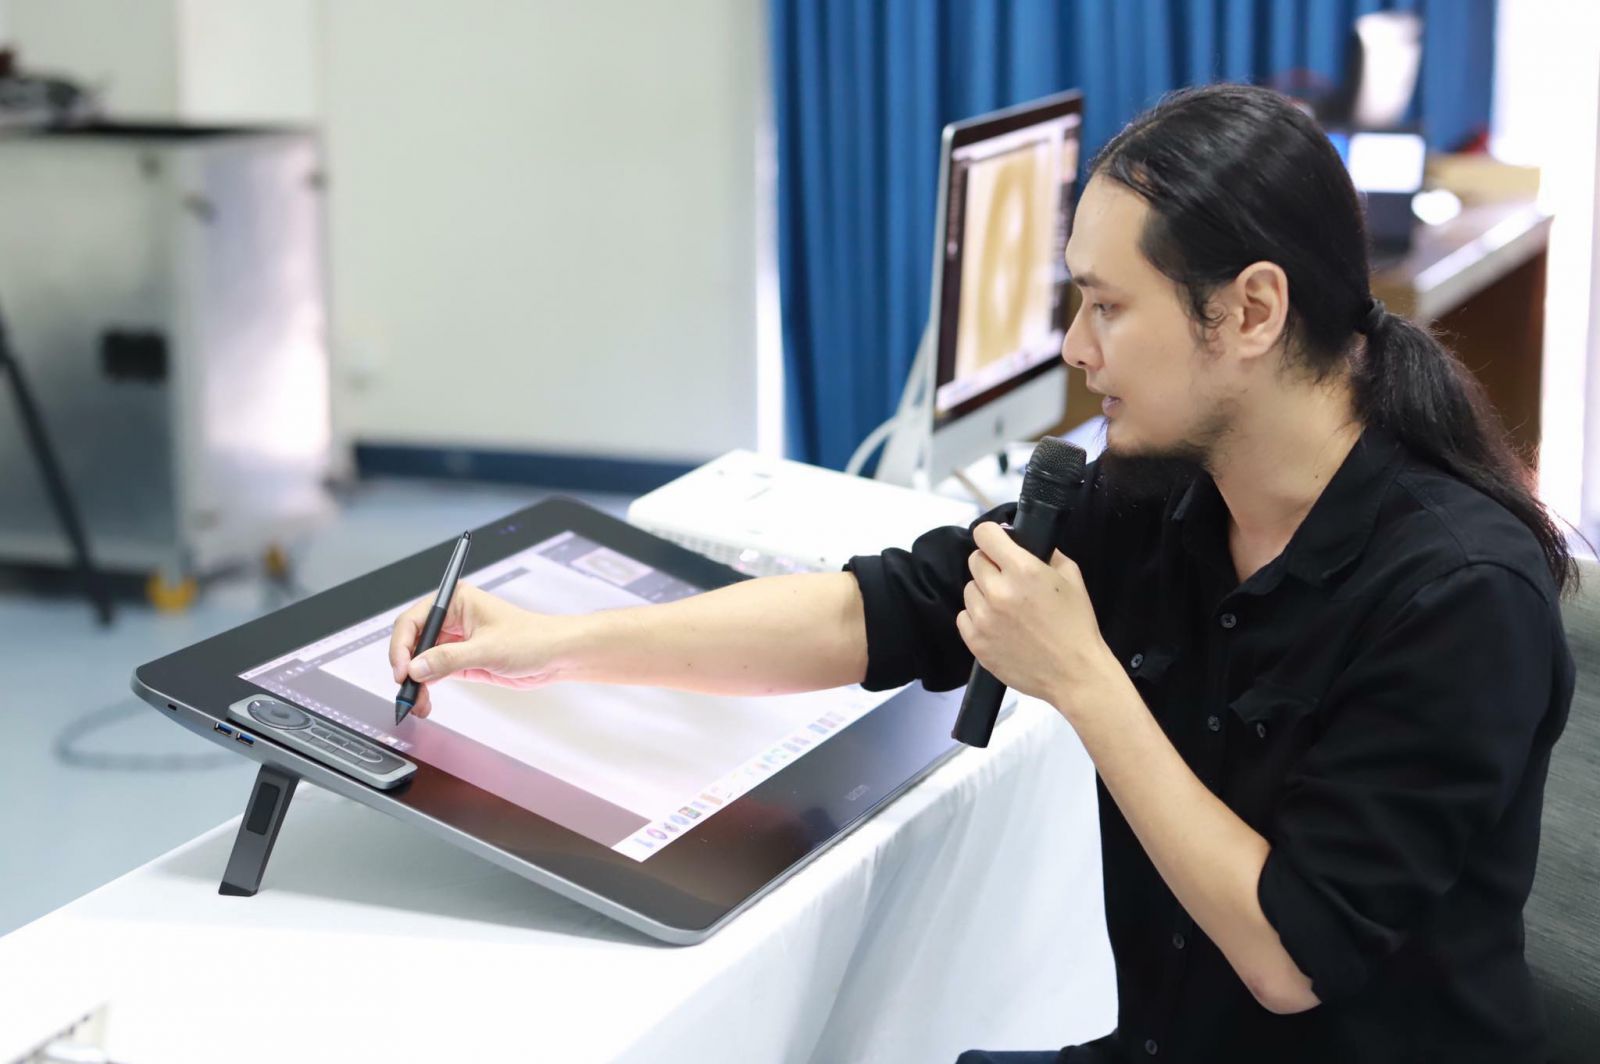 Họa sĩ Phan Vũ Linh - Một trong những họa sĩ tiên phong ứng dụng Digital Painting trong sáng tạo nghệ thuật